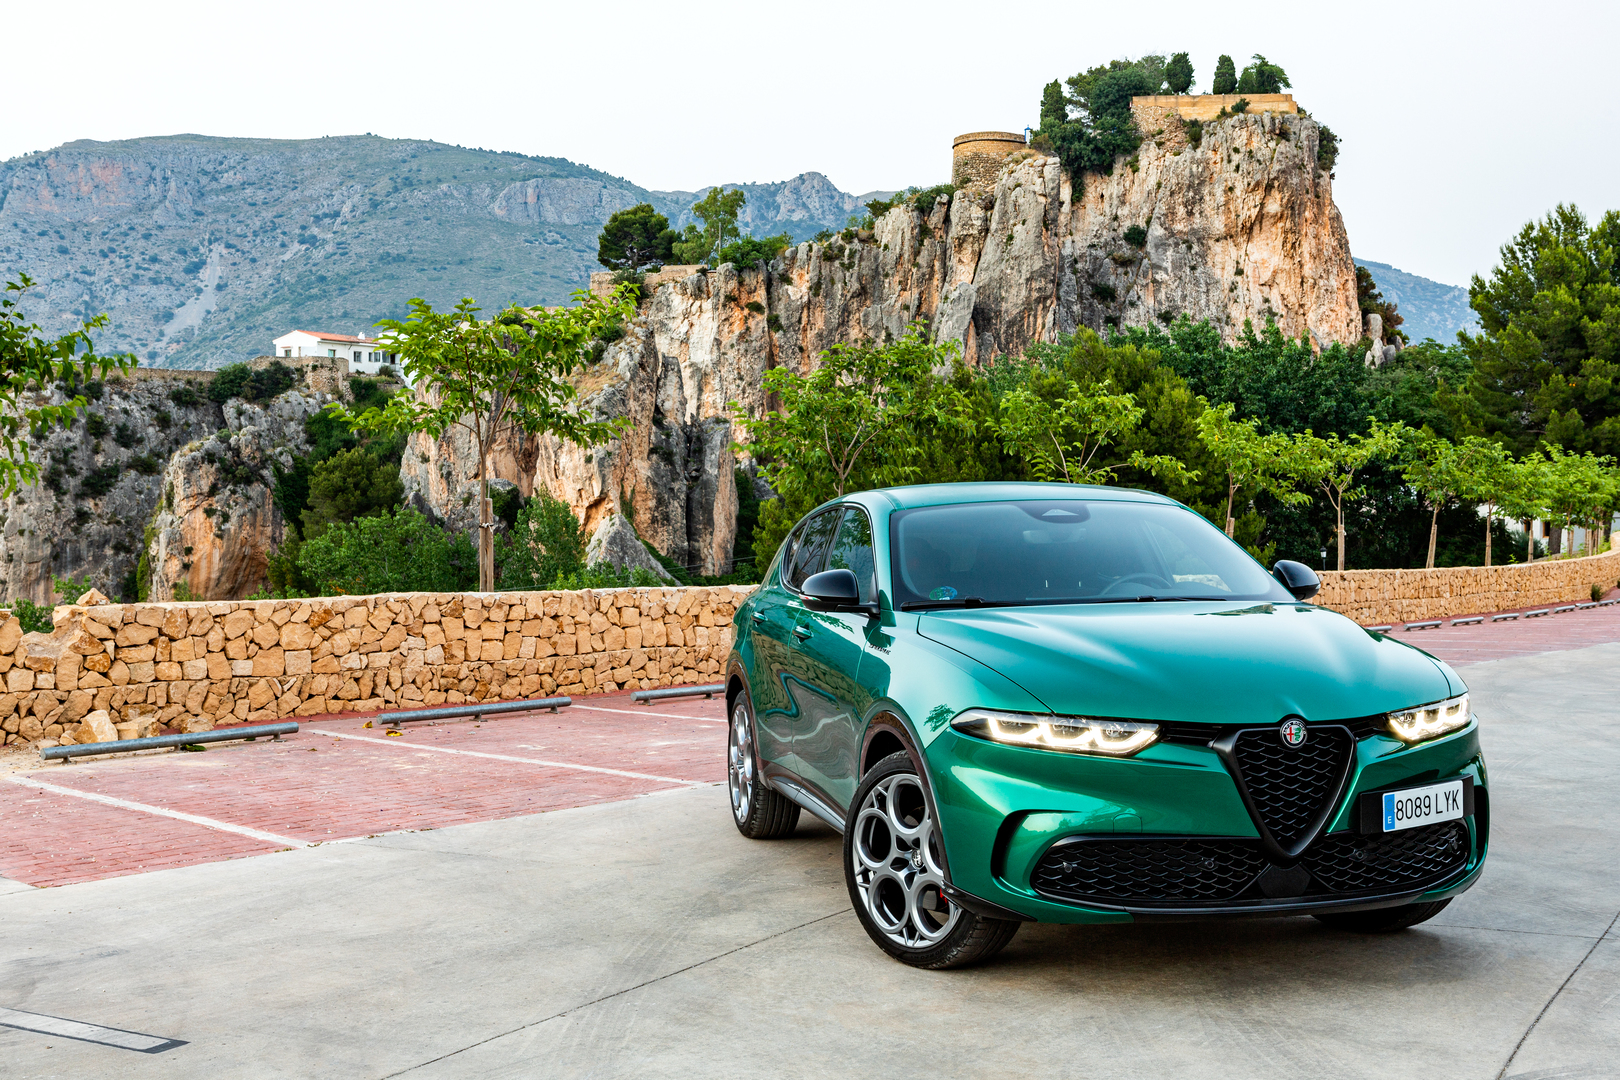 Имидж — всё: Alfa Romeo больше не будет выпускать спортивные автомобили 